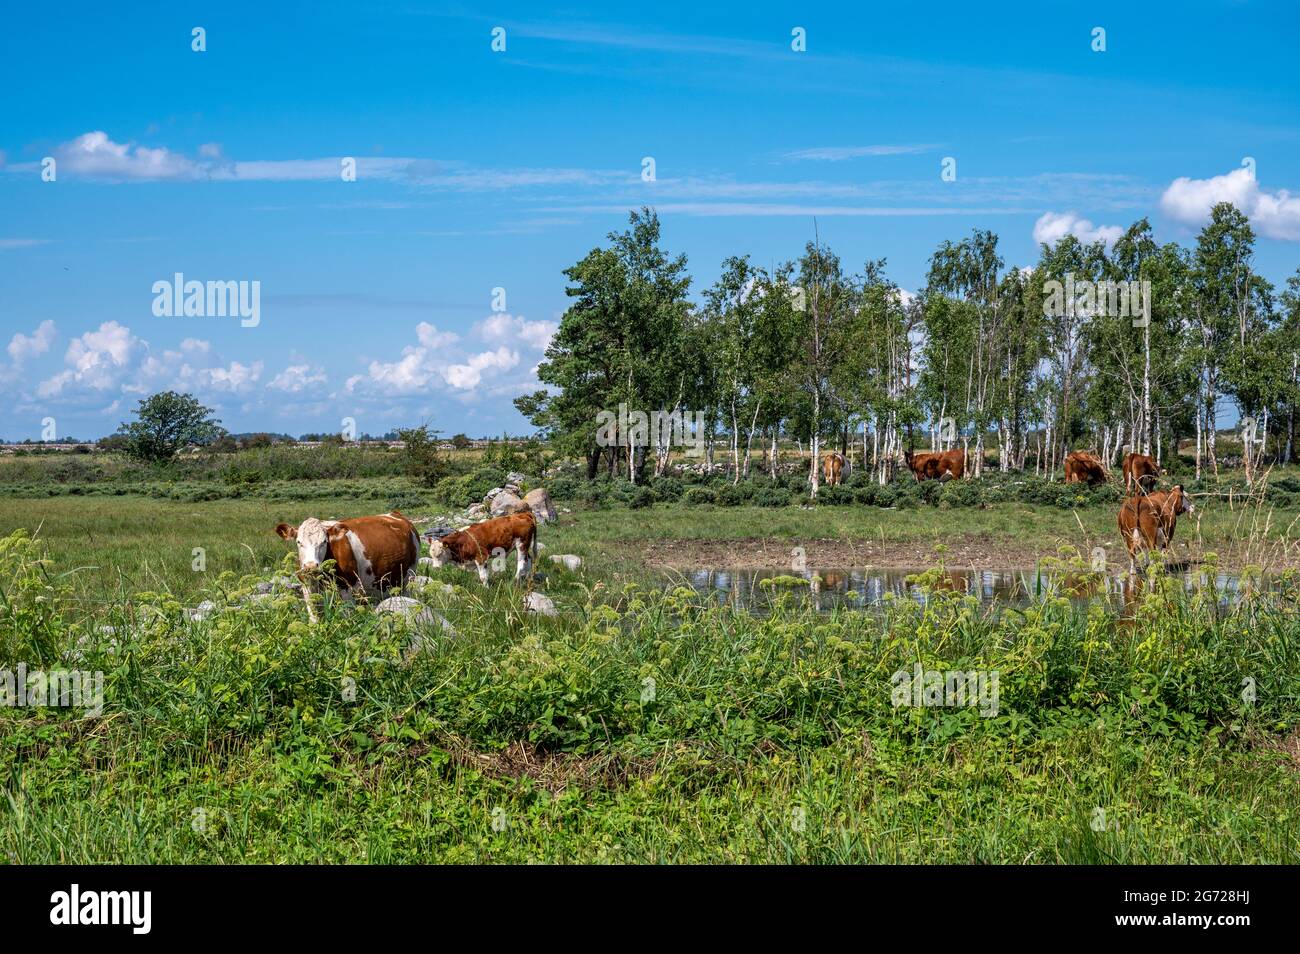 Vacas que pastan en el característico paisaje agrícola del sur de Oland. Esta zona, incluida Stora Alvaret, es declarada Patrimonio de la Humanidad por la UNESCO. Foto de stock